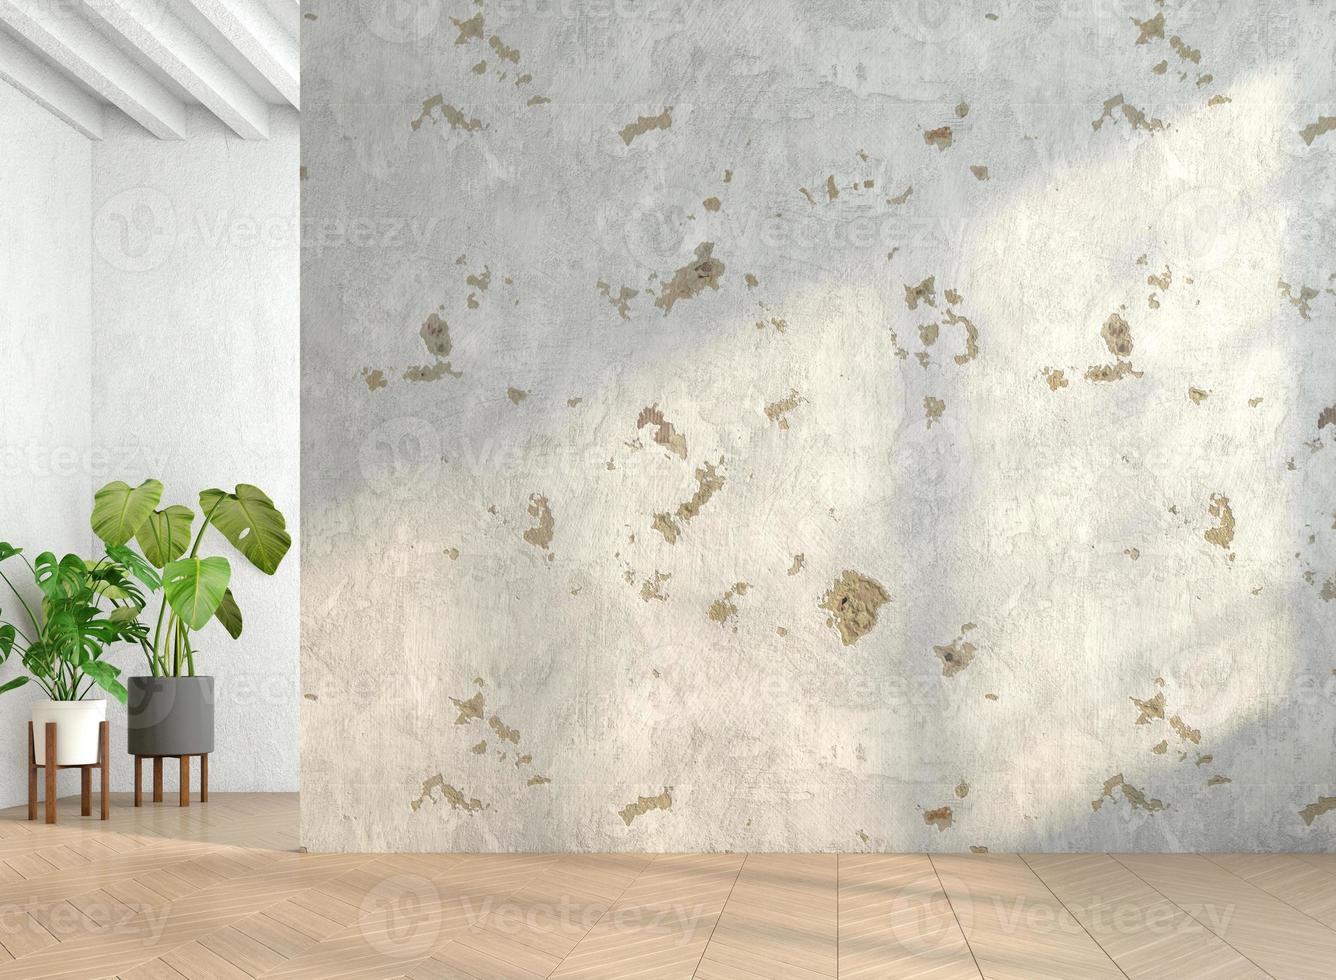 loft minimaliste pièce vide avec mur de ciment patiné et parquet et plantes vertes d'intérieur. rendu 3d photo